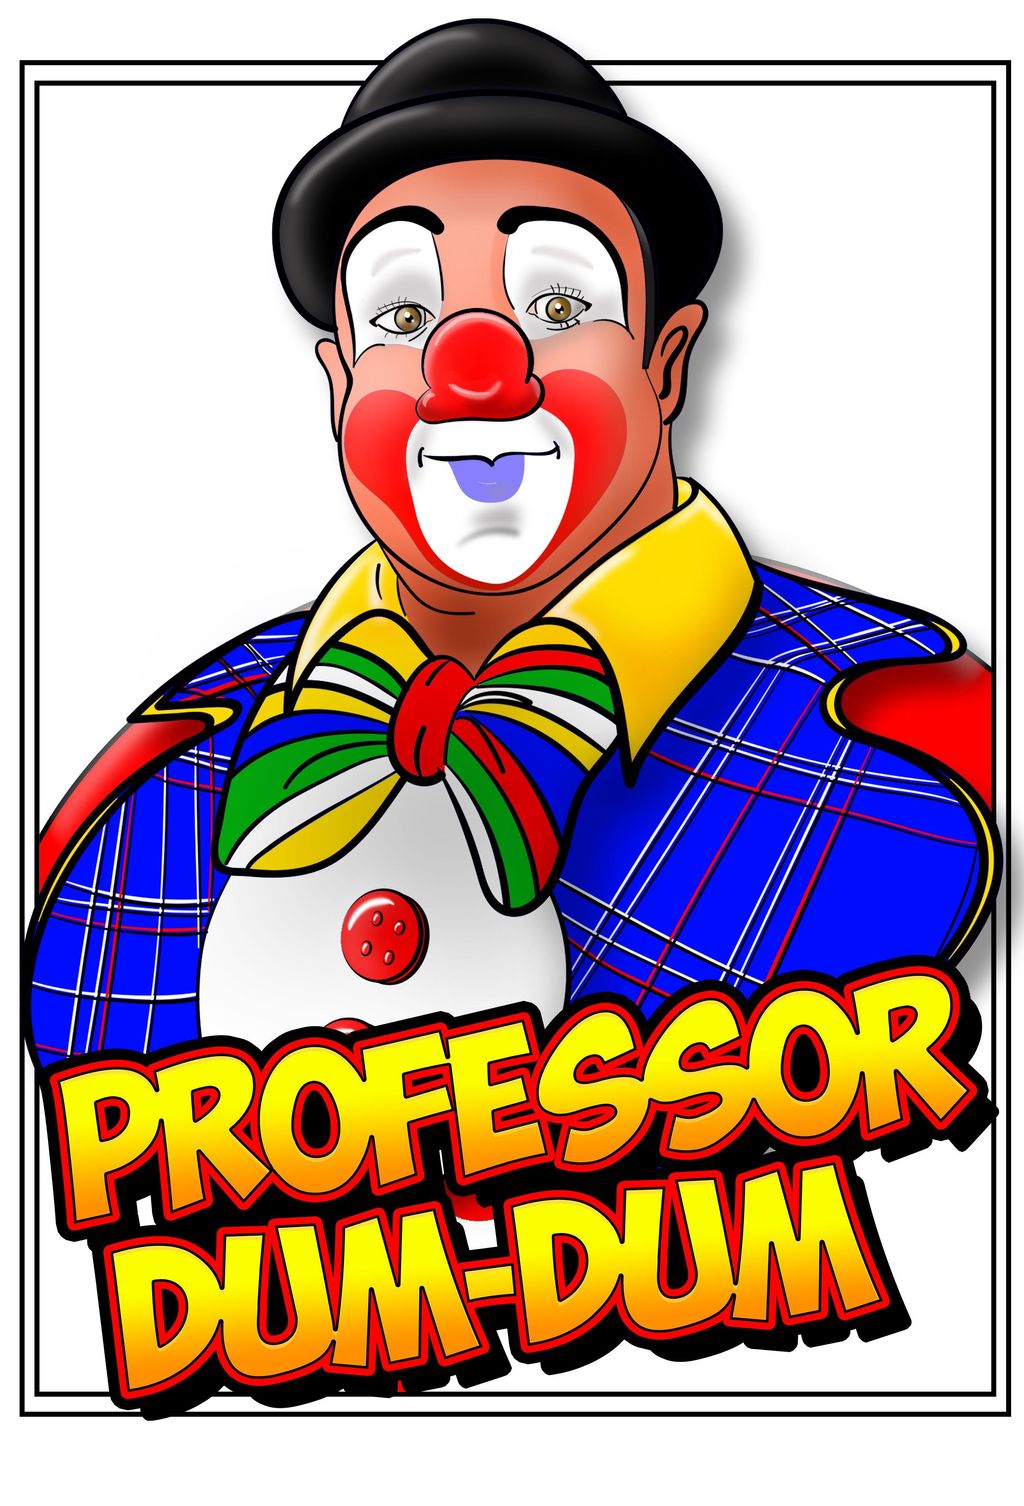 Professor Dum-Dum & Friends